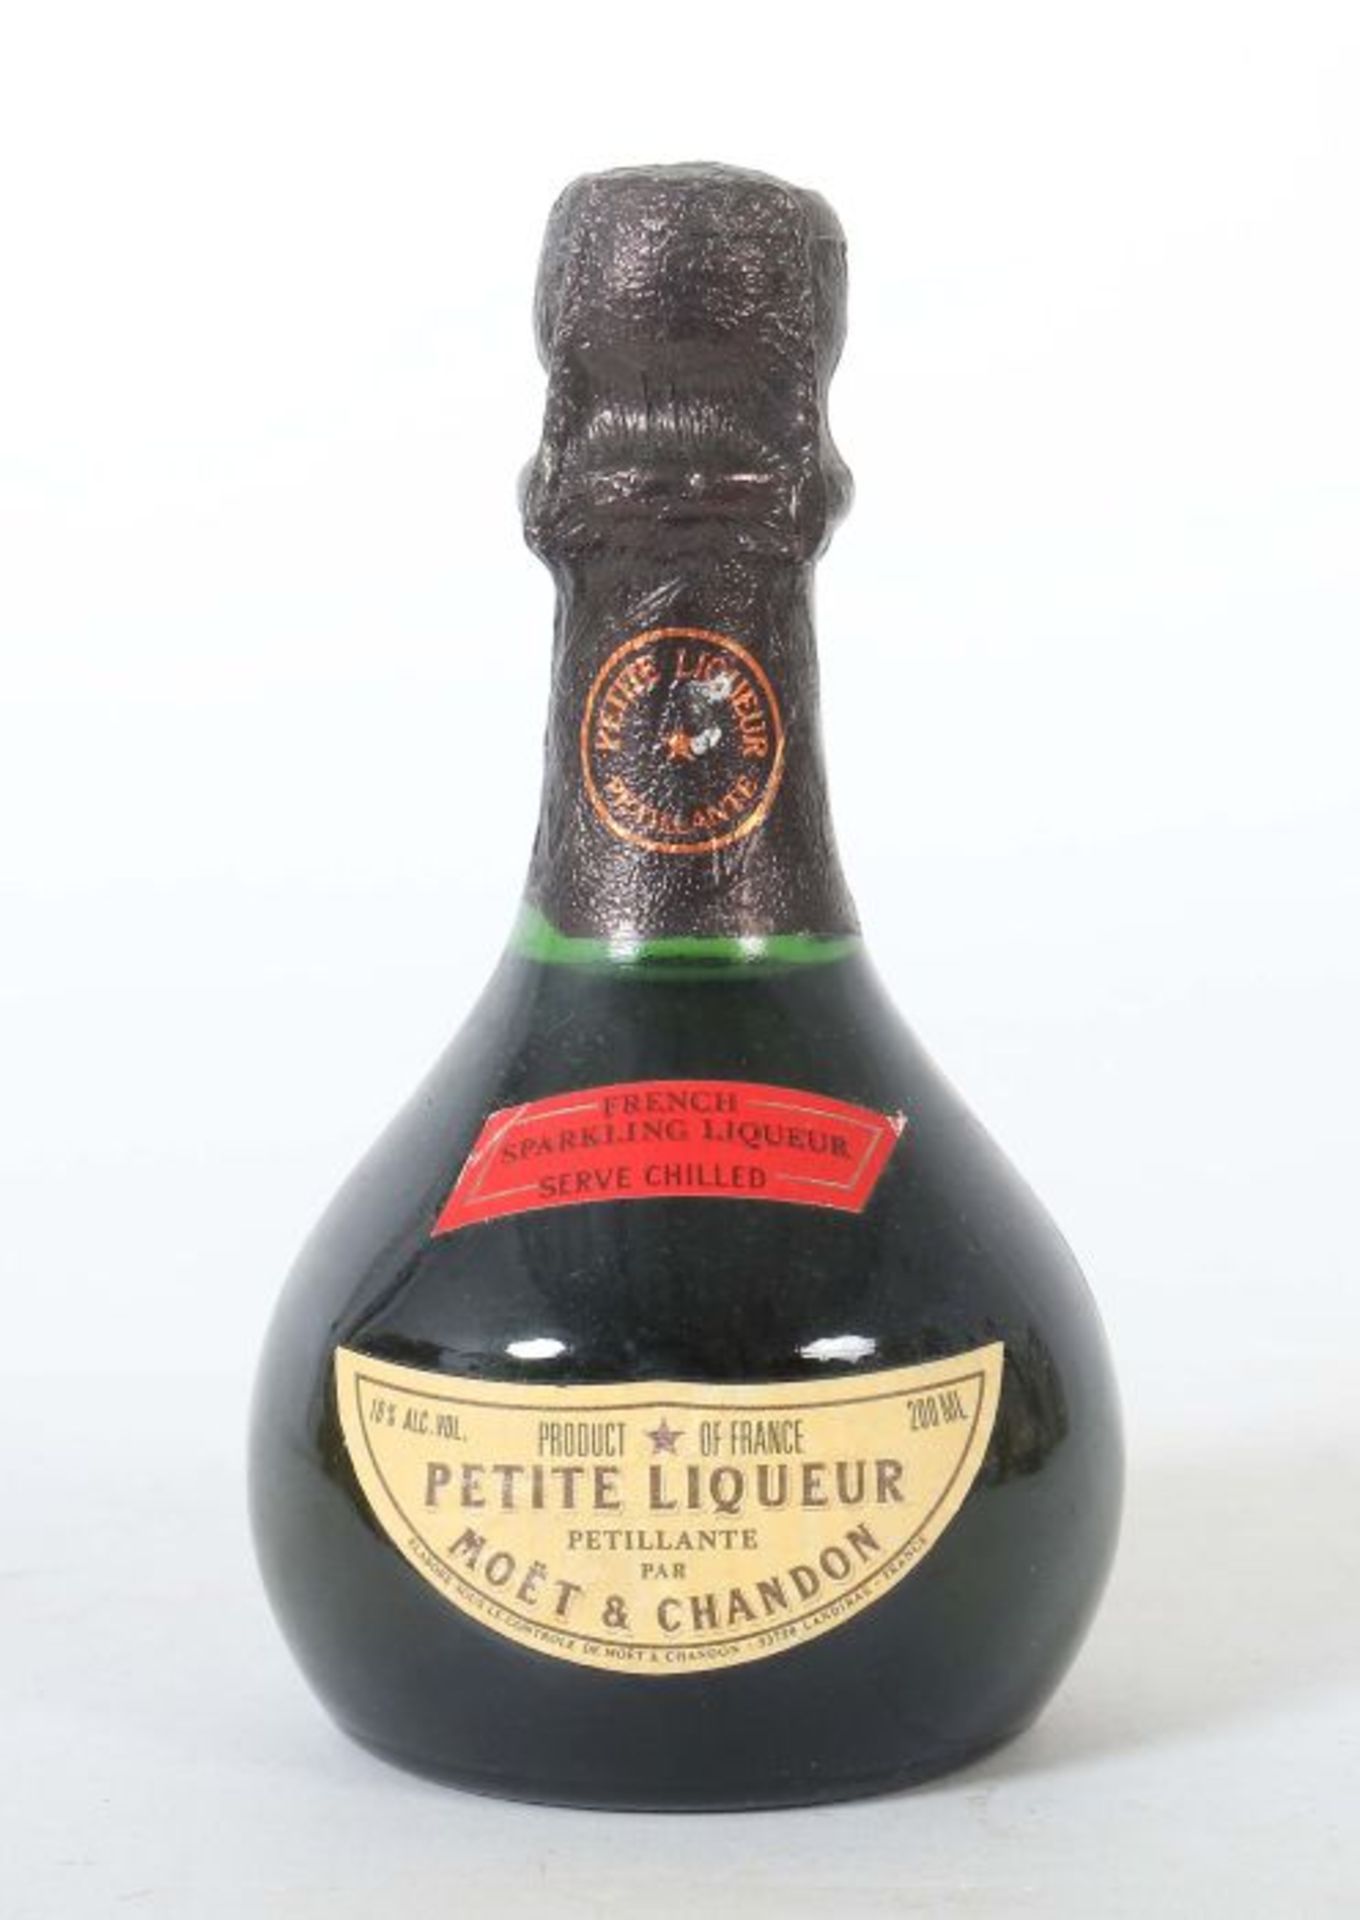 Petite Liqueur Moet & Chandon, 18% vol., 0,2 l.